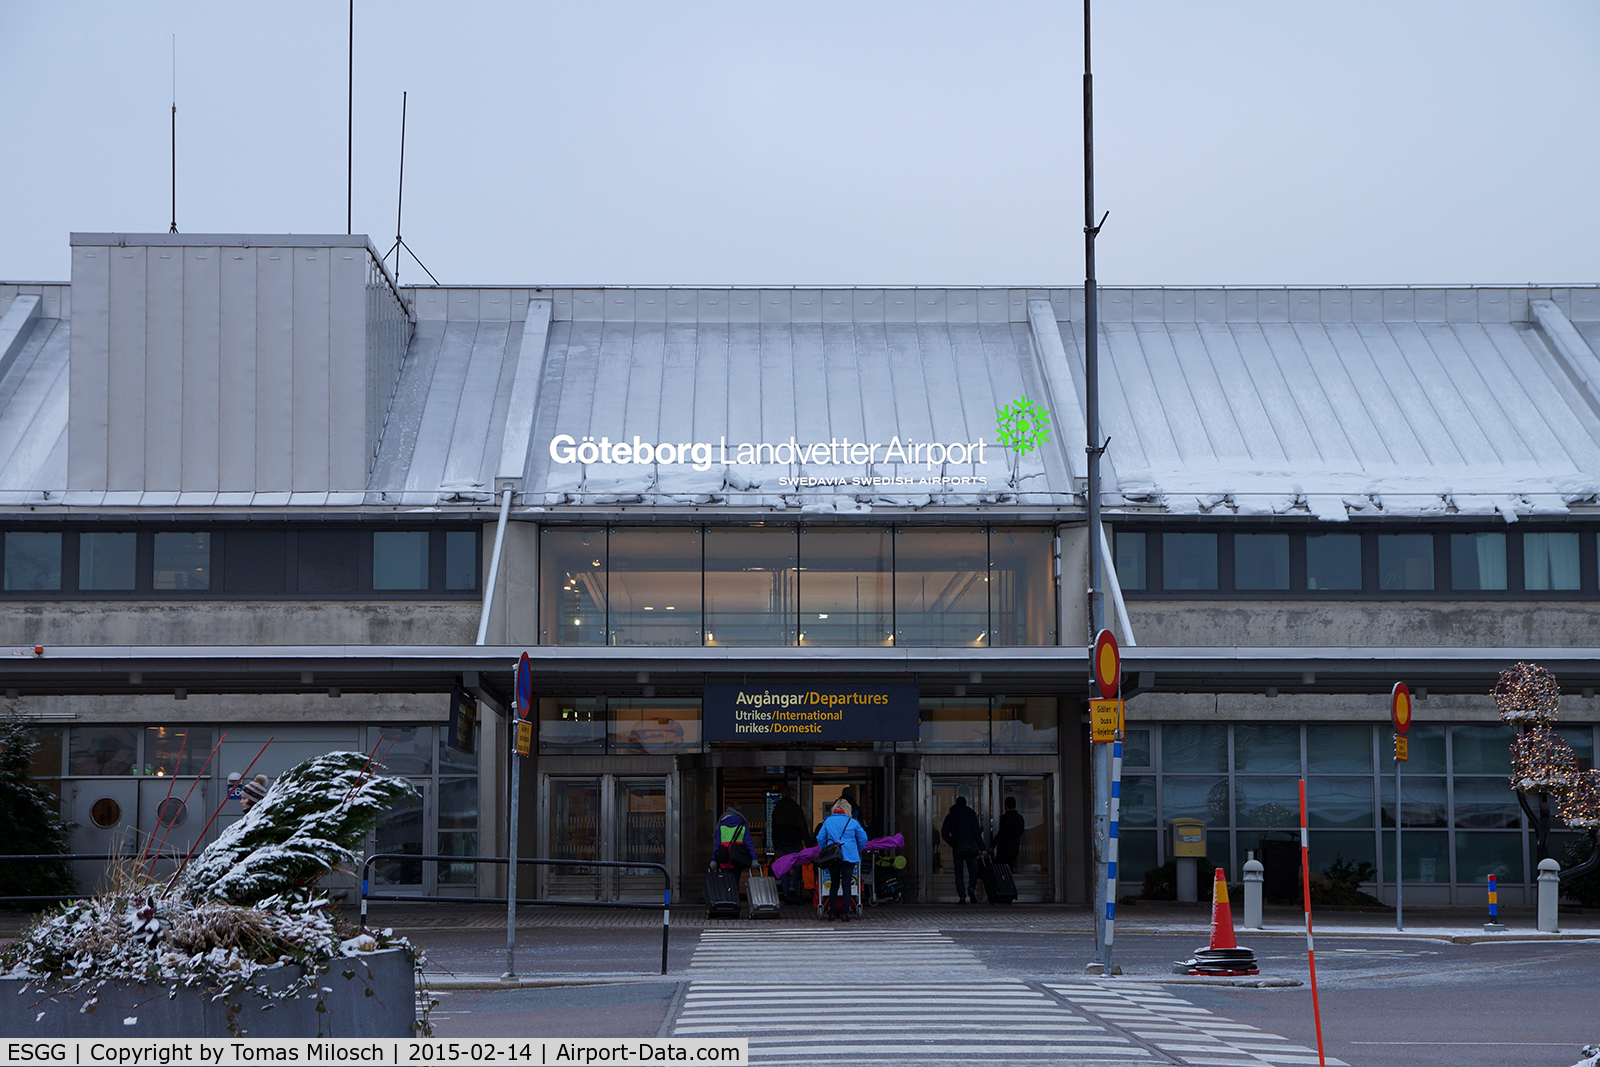 Göteborg-Landvetter Airport, Göteborg Sweden (ESGG) - Landvetter terminal buliding